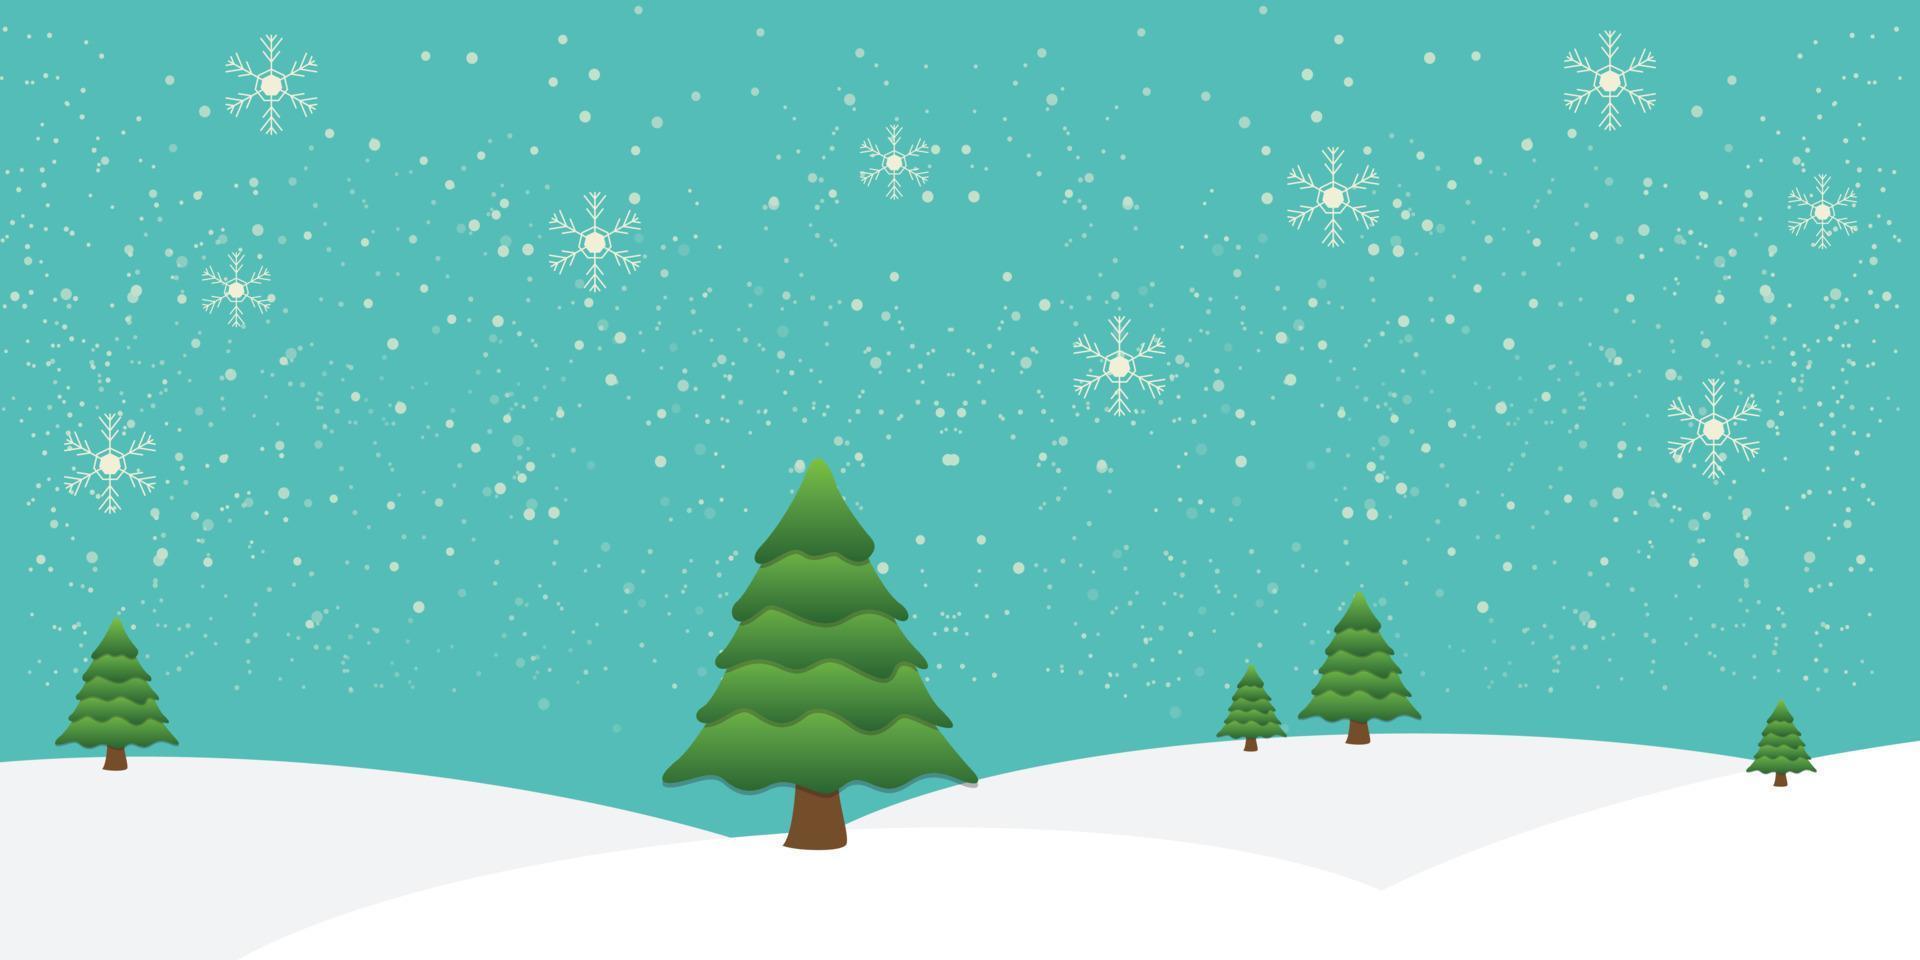 julhelger och vinterlandskap design vektorillustration med snöflingor och träd vektor